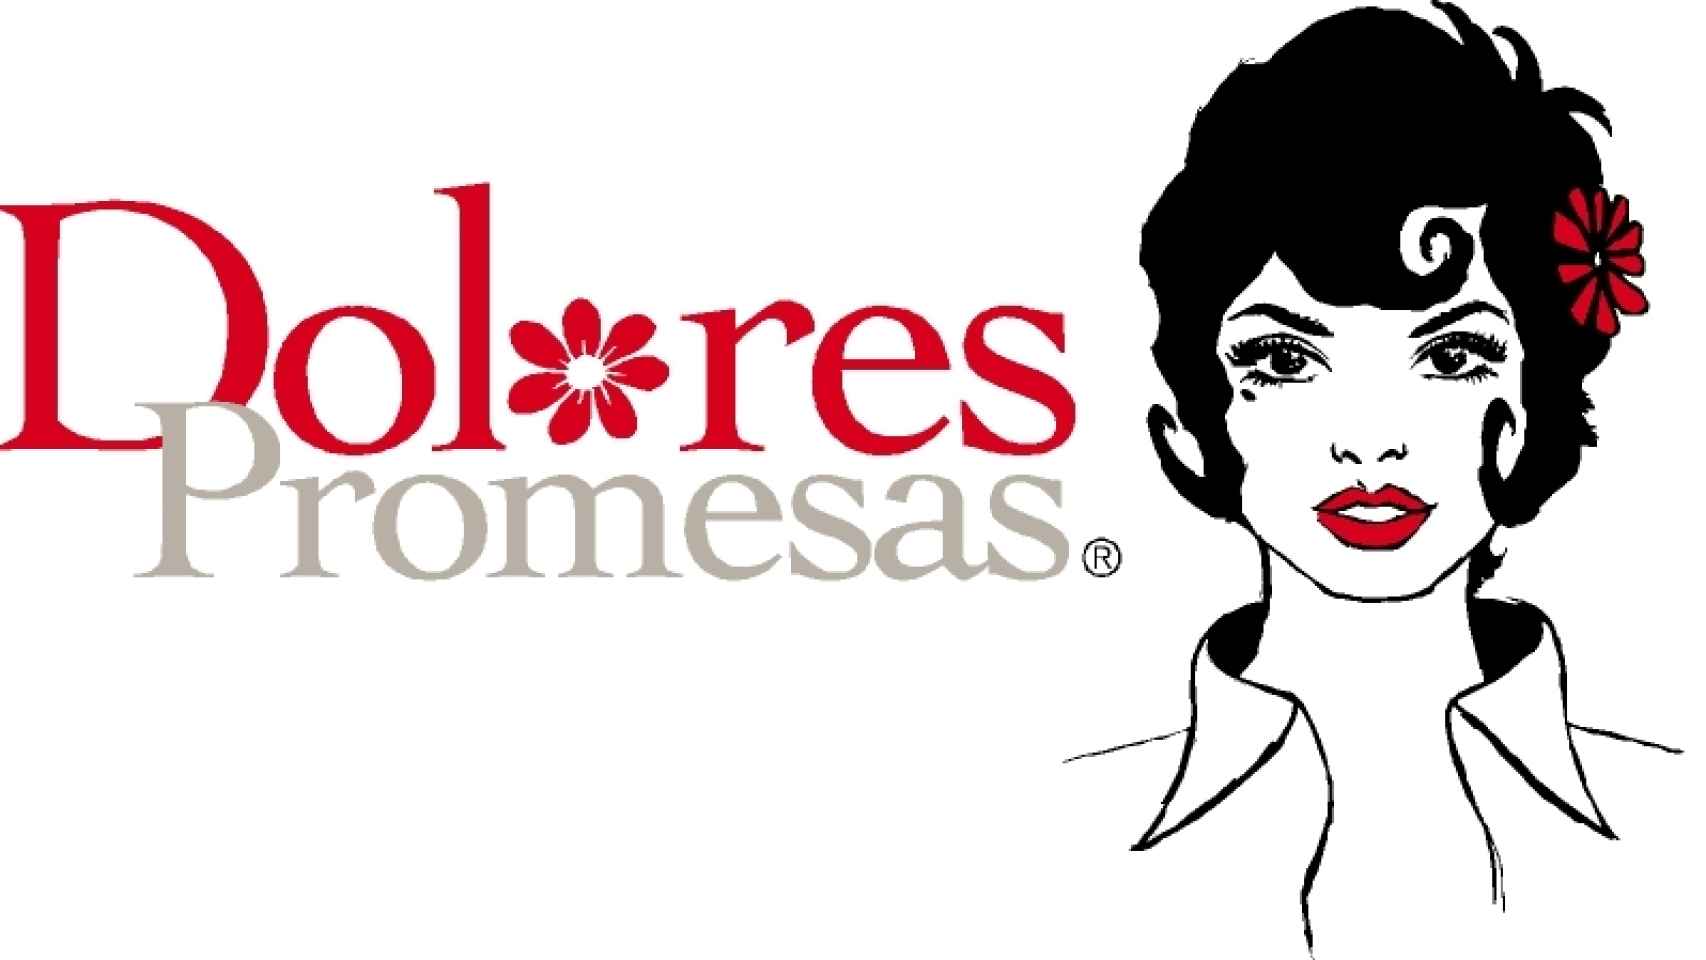 El logo de Dolores Promesas y su personaje.